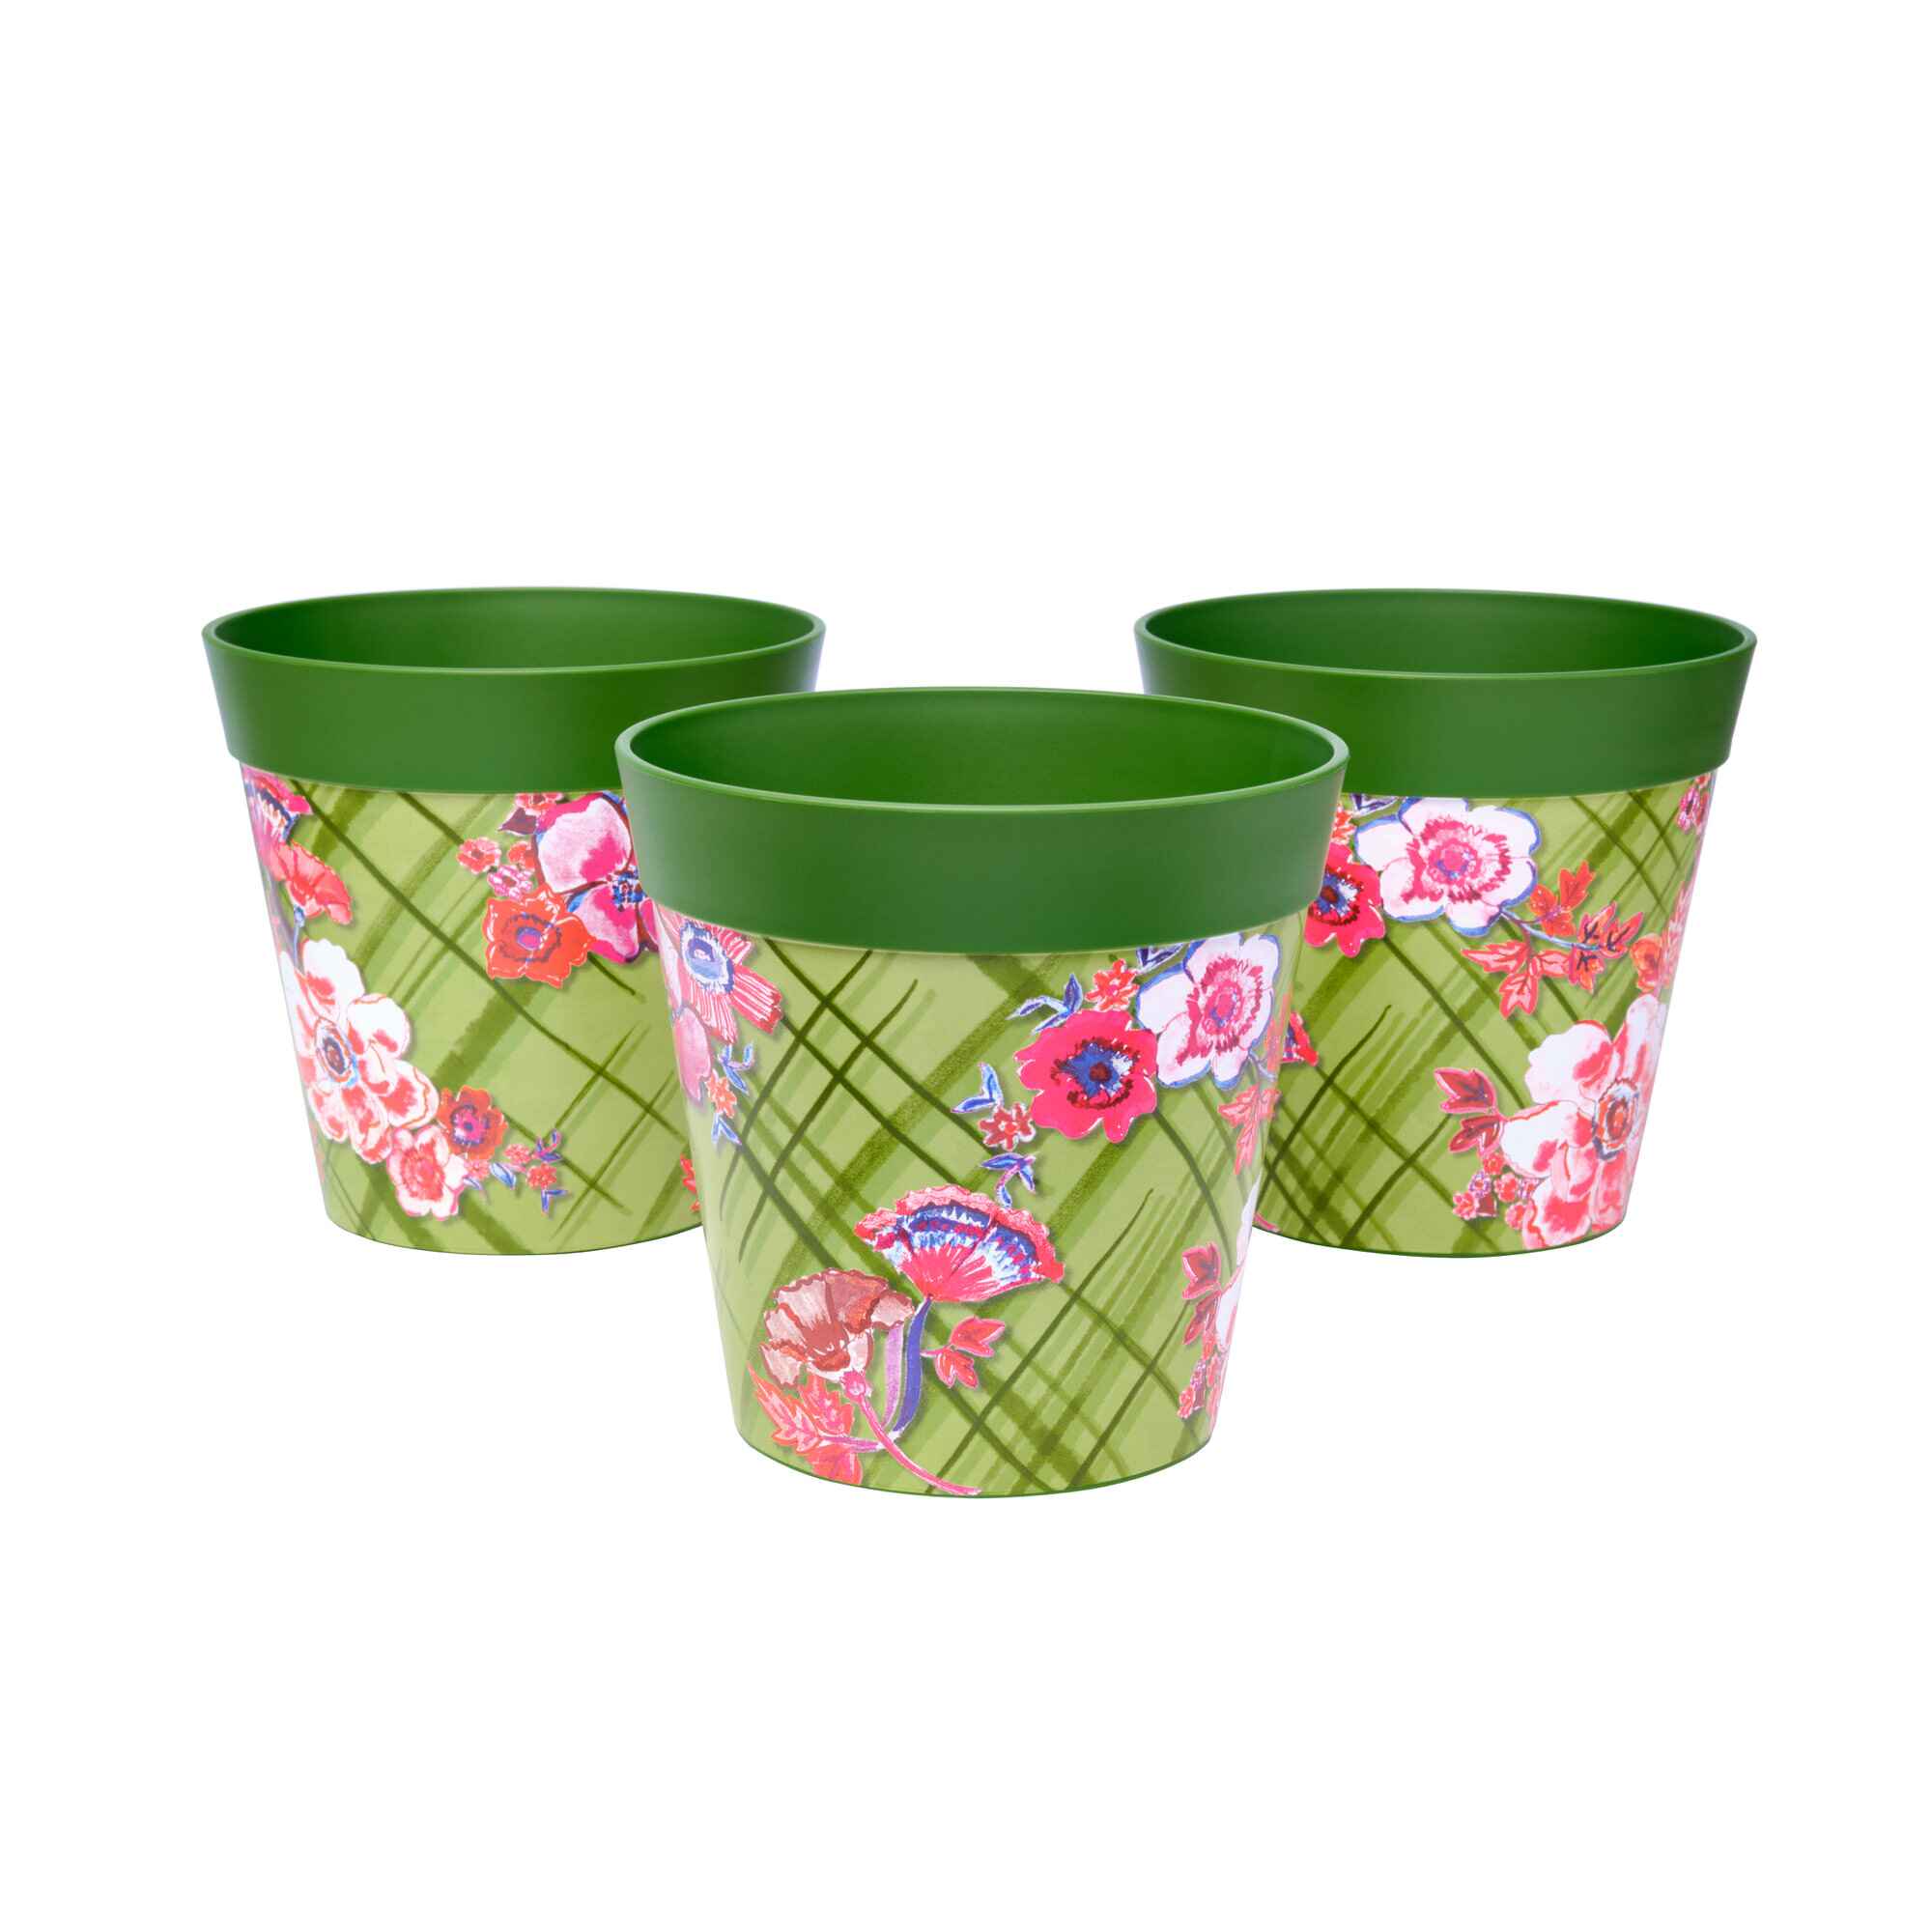 Picture of 3 Small 15cm Plastic Green Trellis Indoor/Outdoor Flowerpots